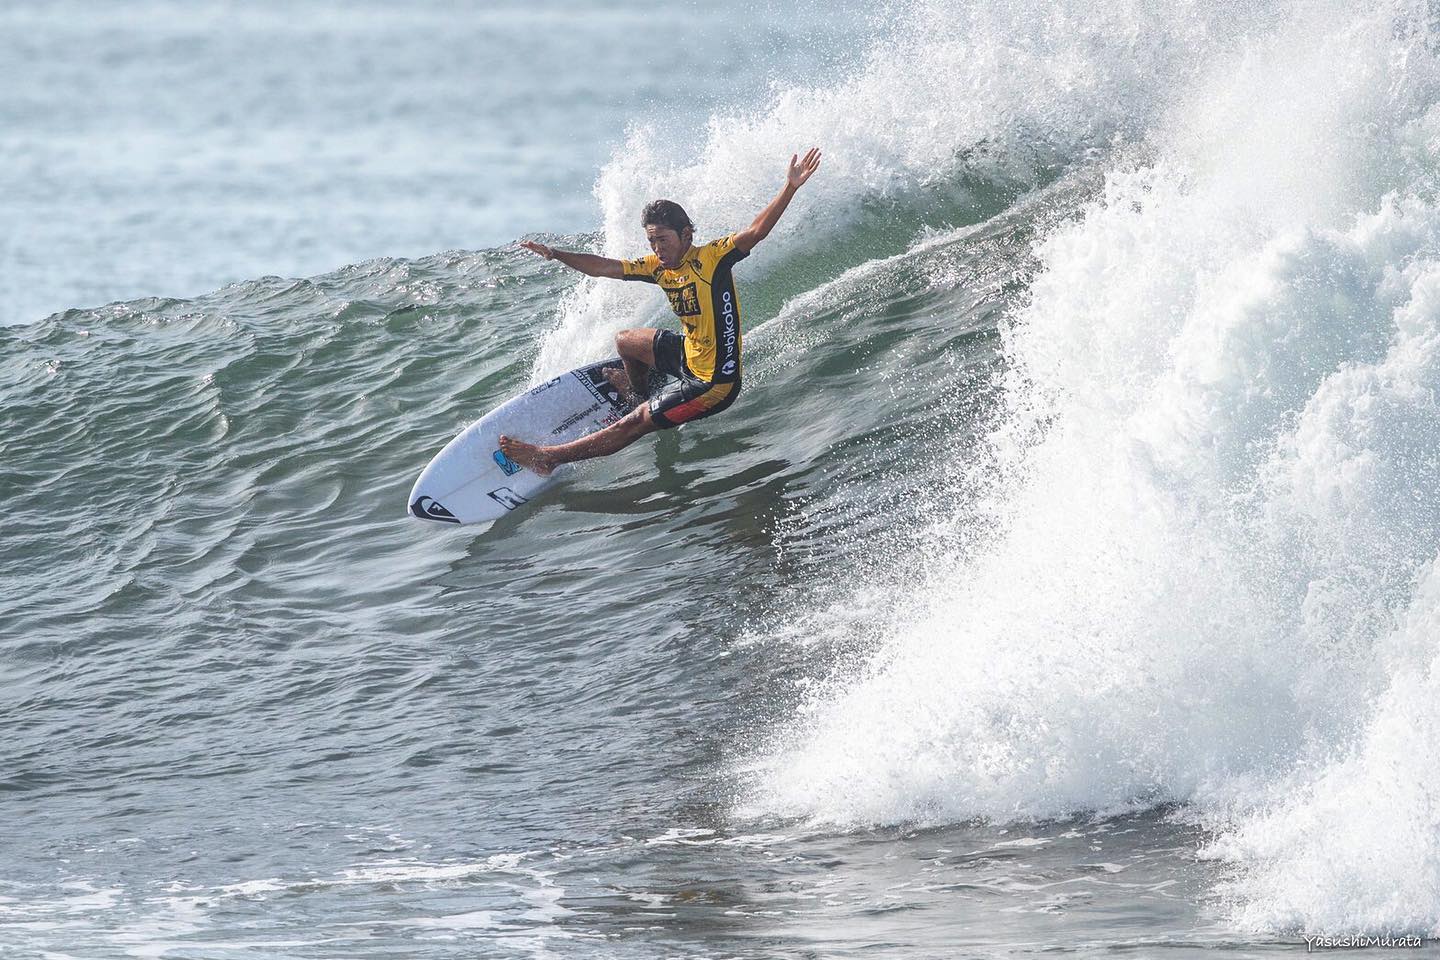 Balinese surfer Rio Waida edged out 2018 world champ Medina and Deivid Silva on May 13. Photo: Rio Waida / Facebook 